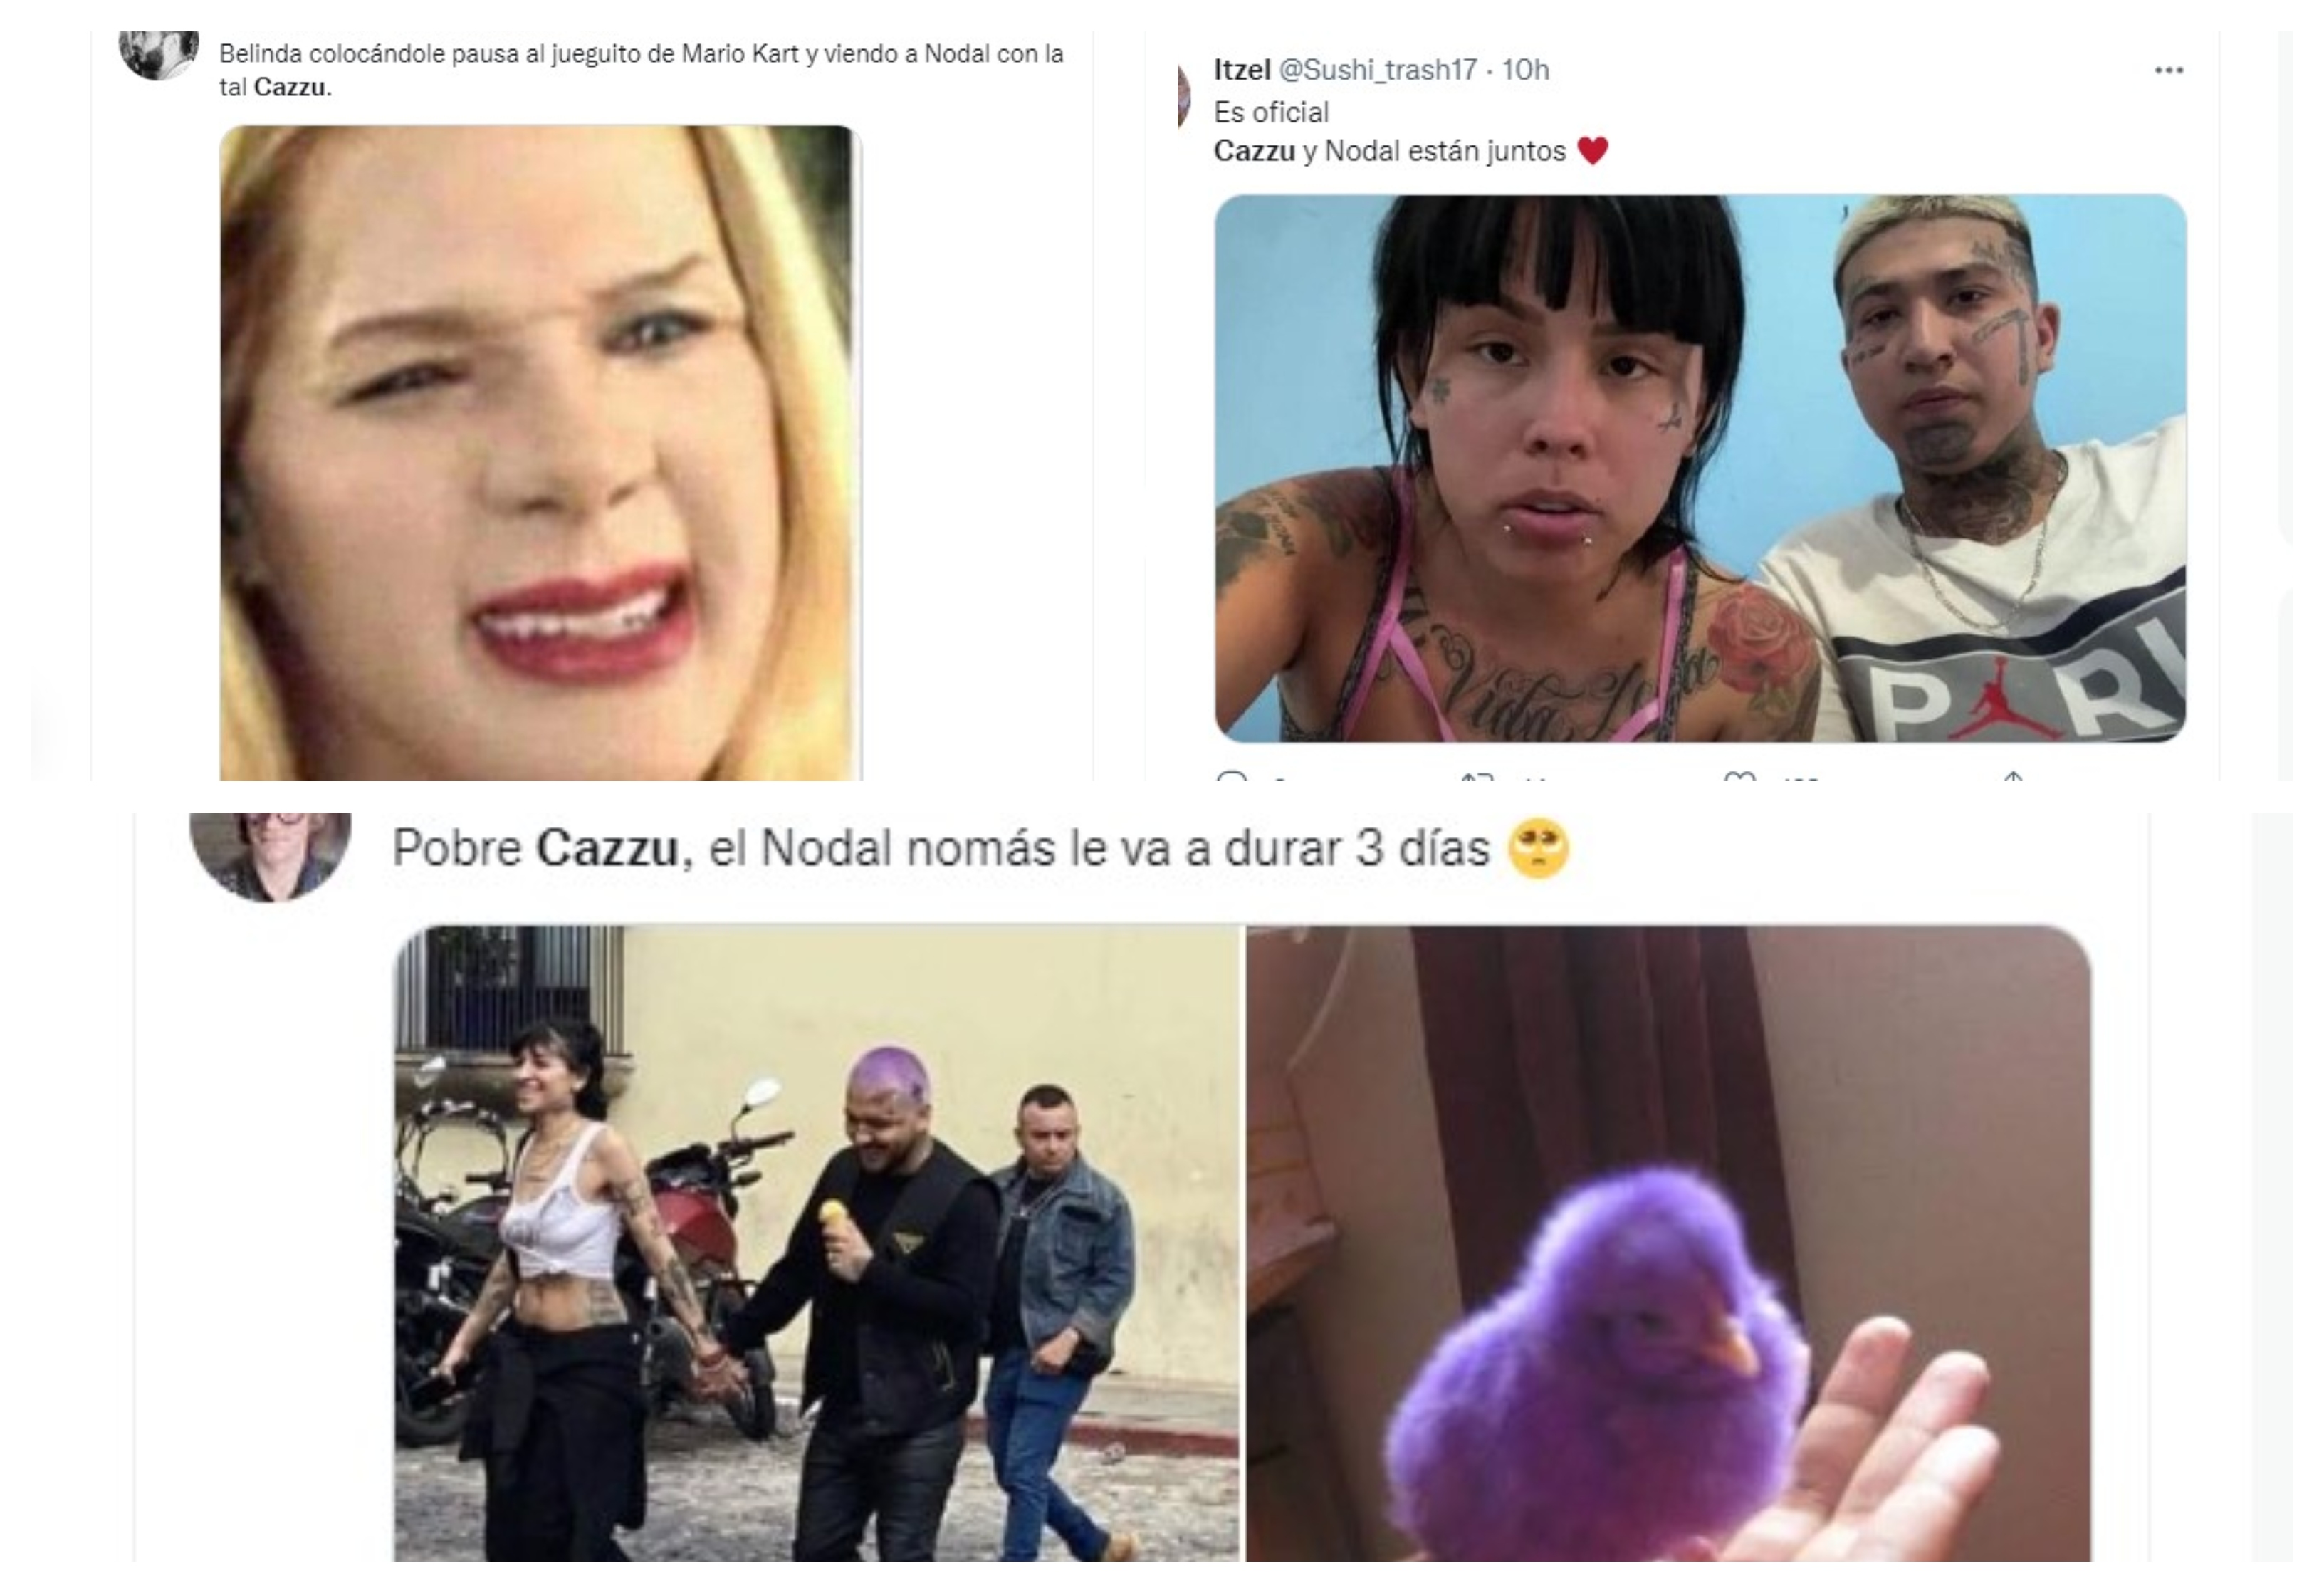 El polémico encuentro entre el joven mexicano y la rapera argentina conmocionó a fanáticos, quienes no tardaron en reaccionar con memes. (Fotos: Twitter)